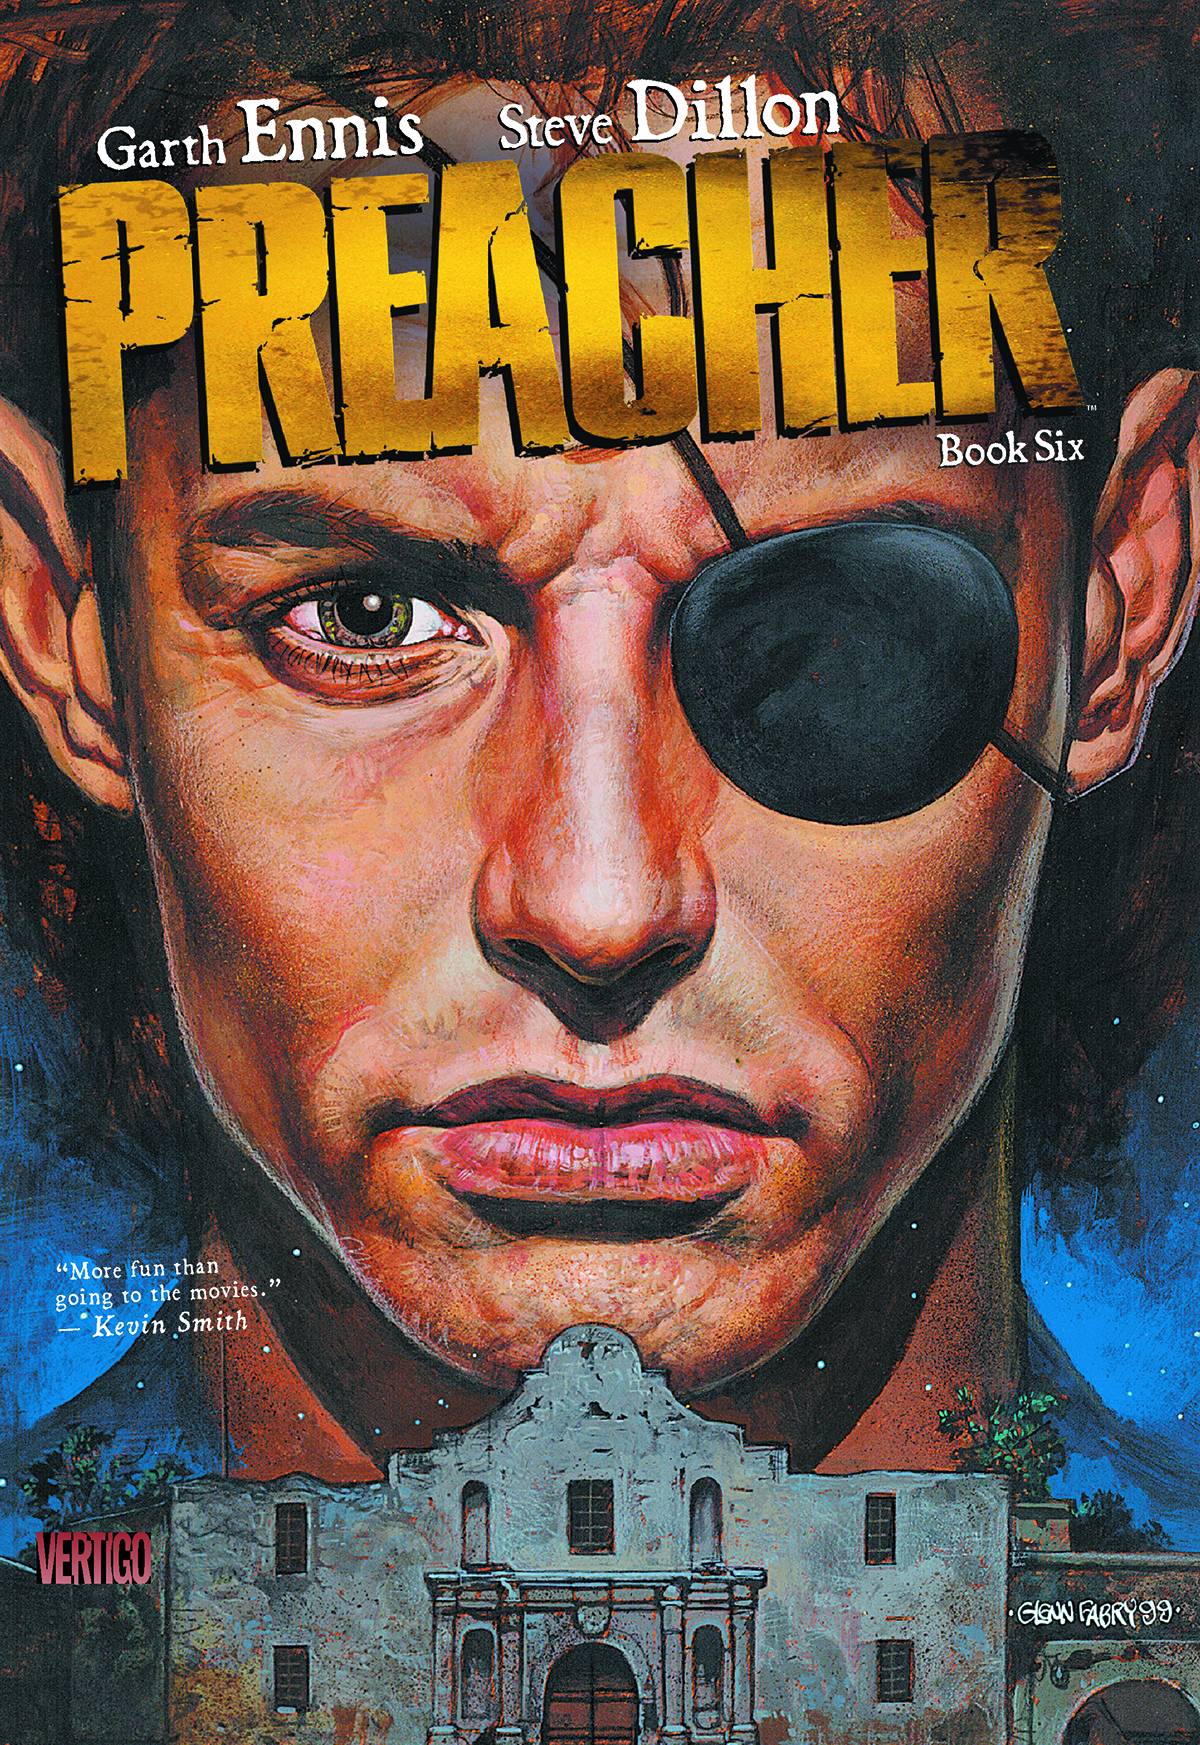 Preacher Graphic Novel Book 6